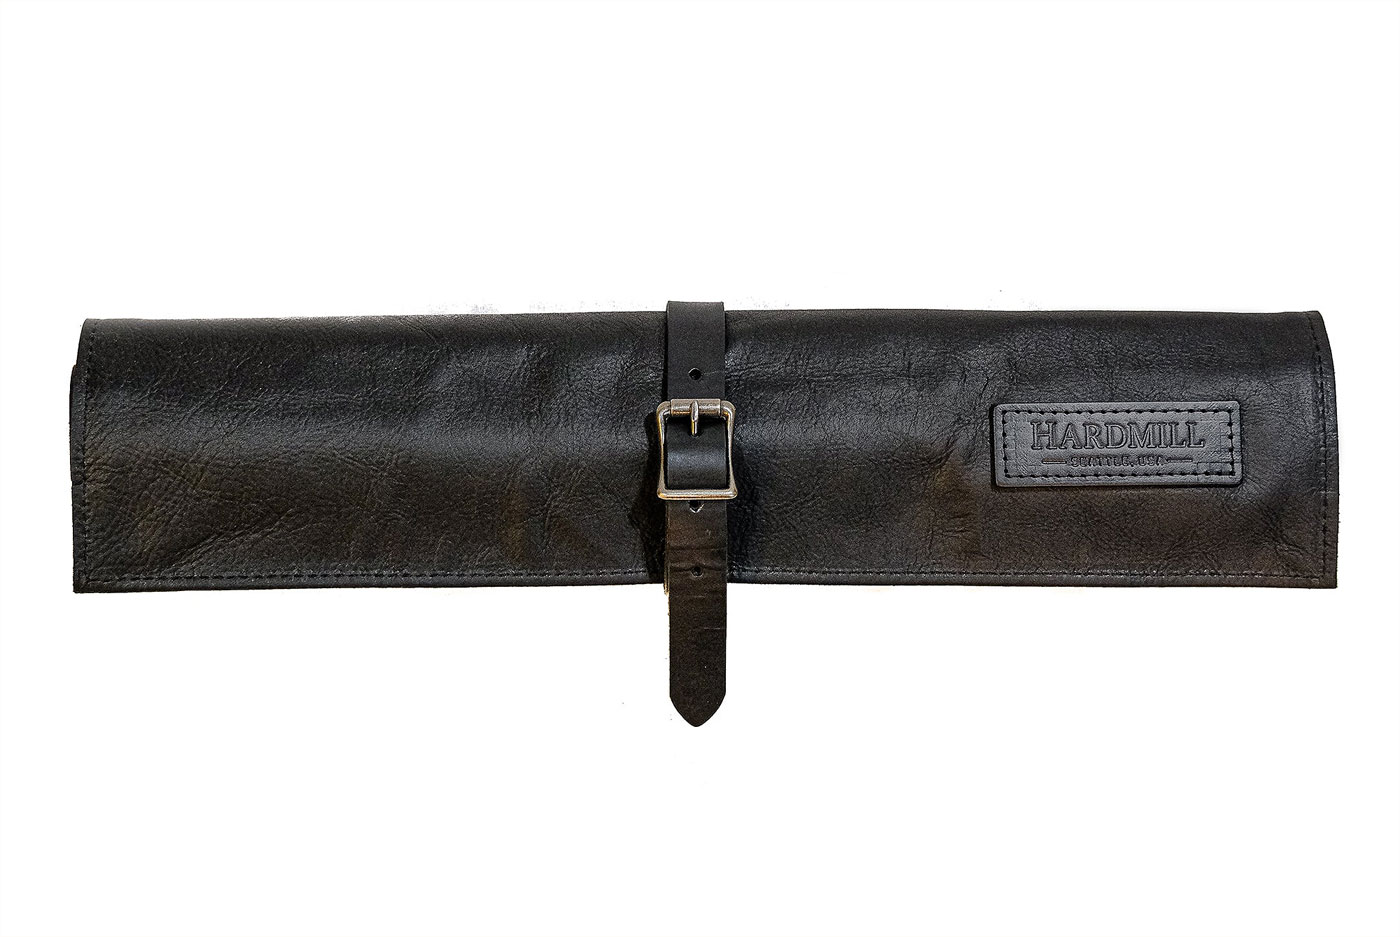 4 Pocket Leather Compact Knife Roll - Black (CK-OL-BK)